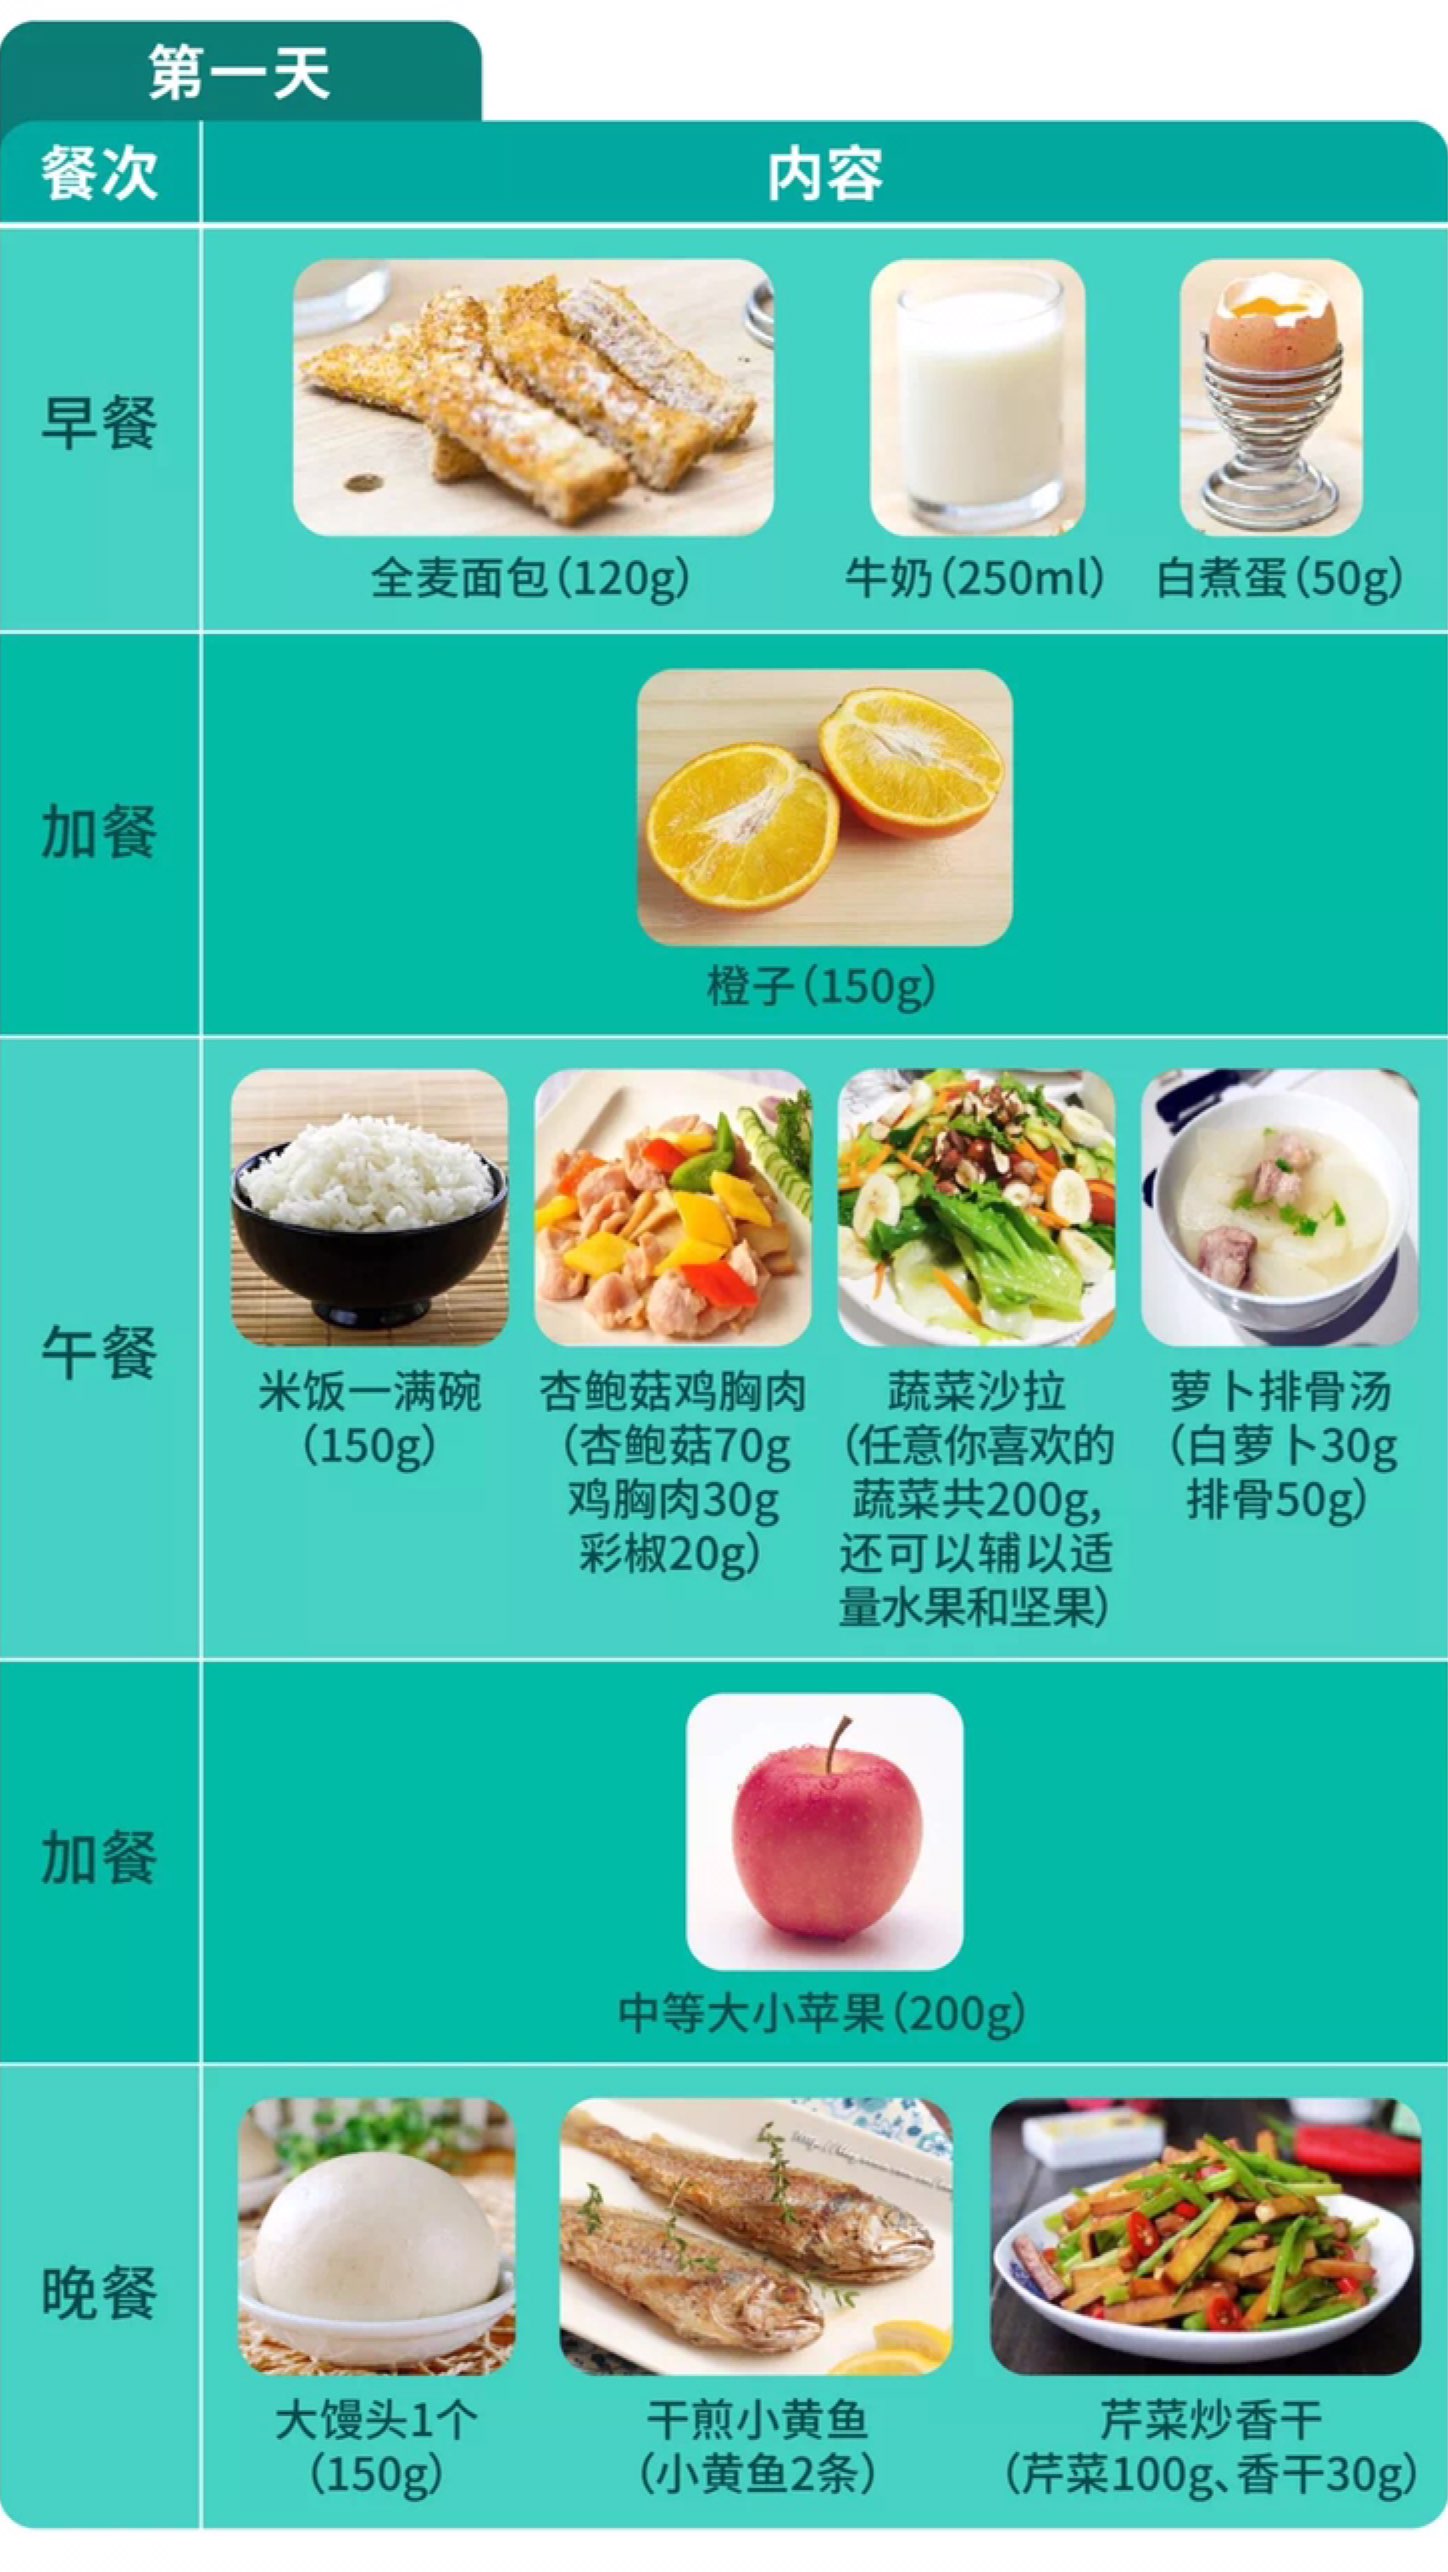 这是上海发布推荐的疫情期间的营养食谱分享给需要的朋友们